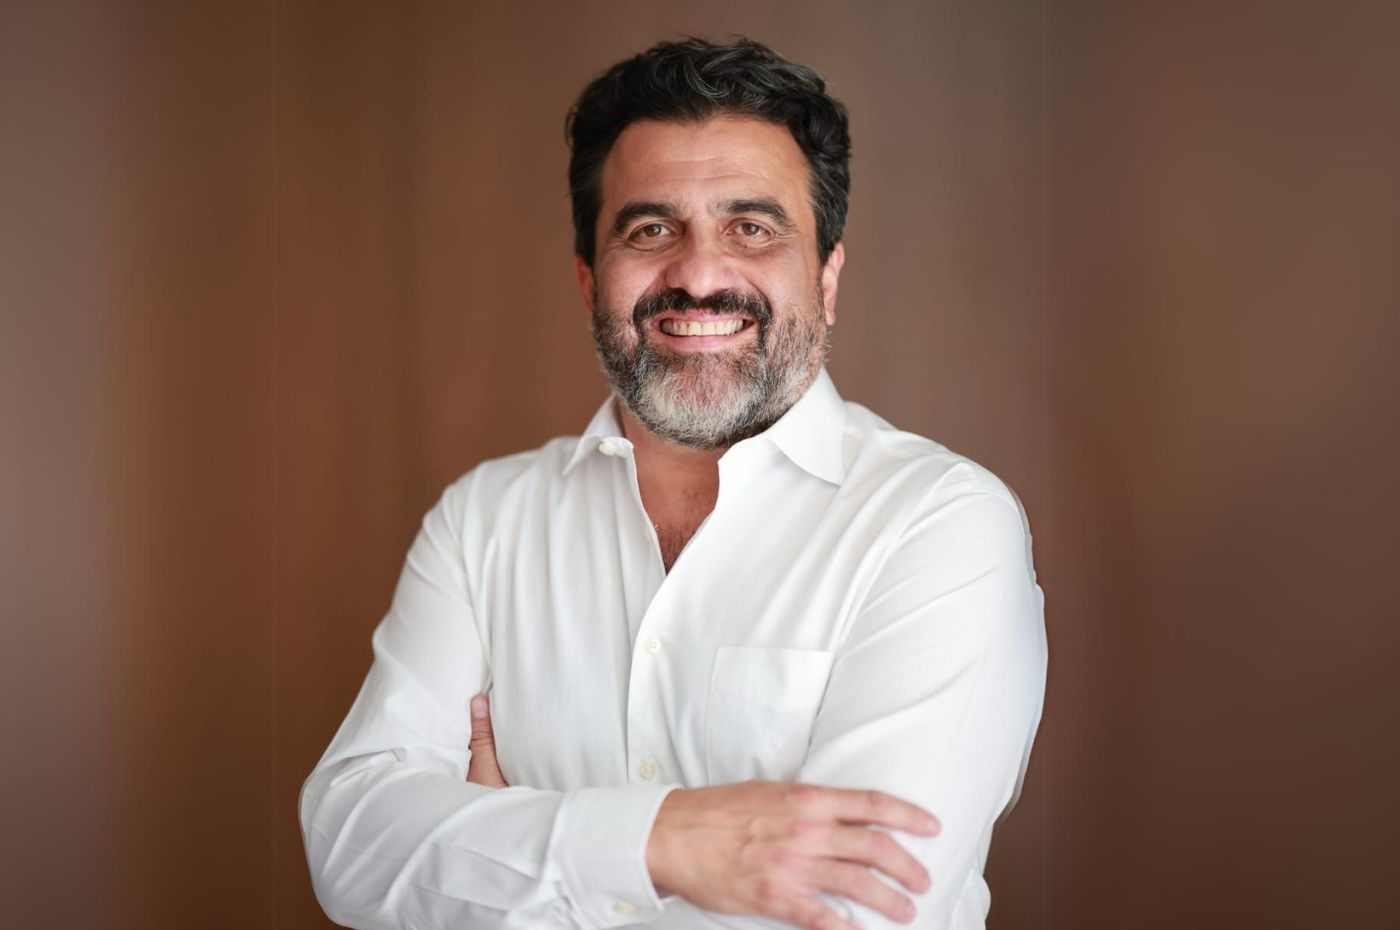 Homem de barba e cabelos escuros, usando camisa branca, sorri com os braços cruzados. Ricardo Bocalon, pré-candidato a prefeito de Jundiaí.